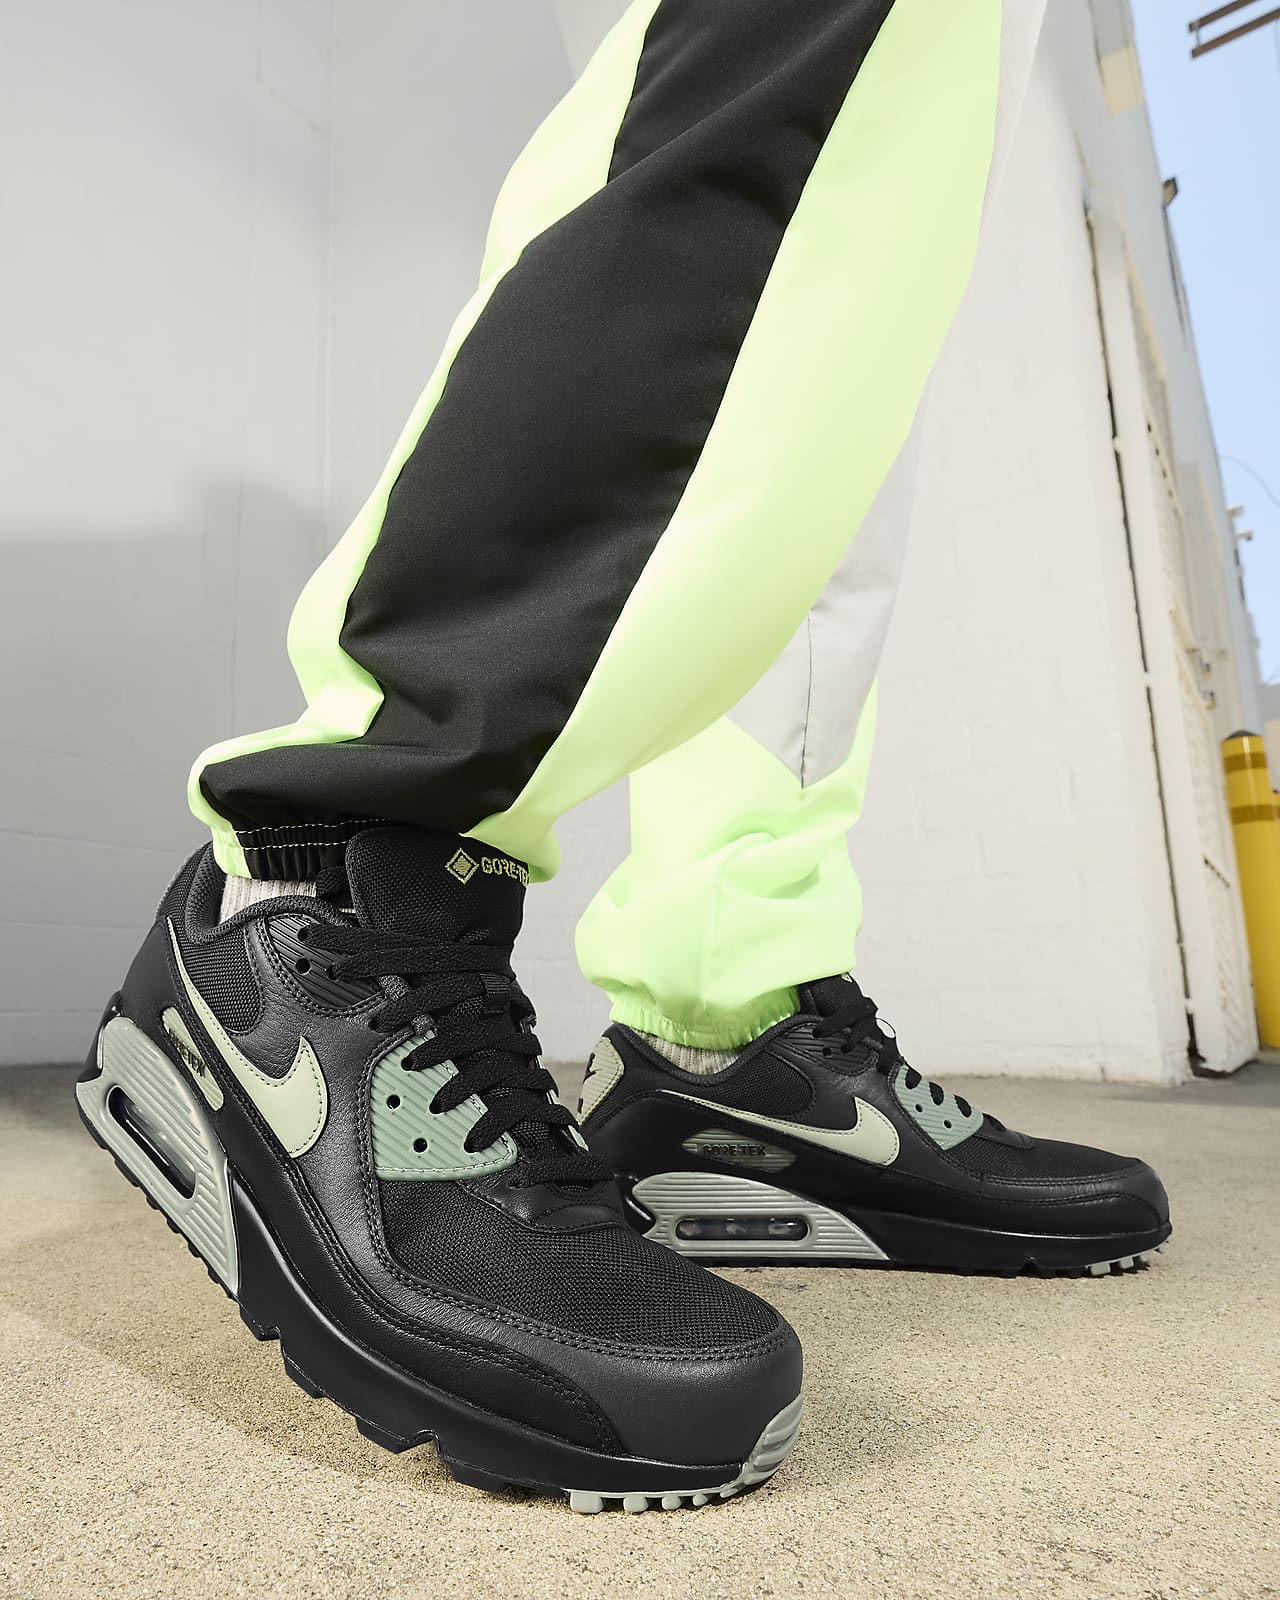  Nike Air Max 90 GTX Zapatos para hombre, Negro/Tour